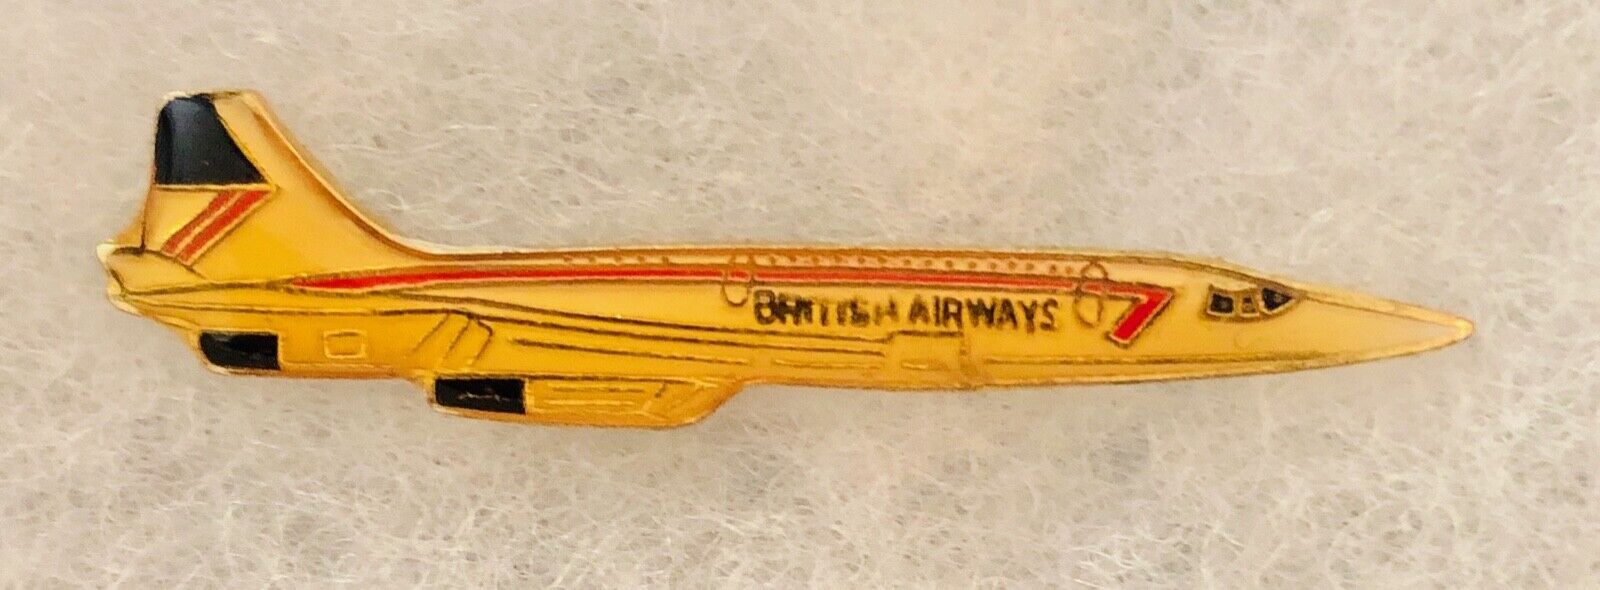 British Airways Concorde Lapel Pin